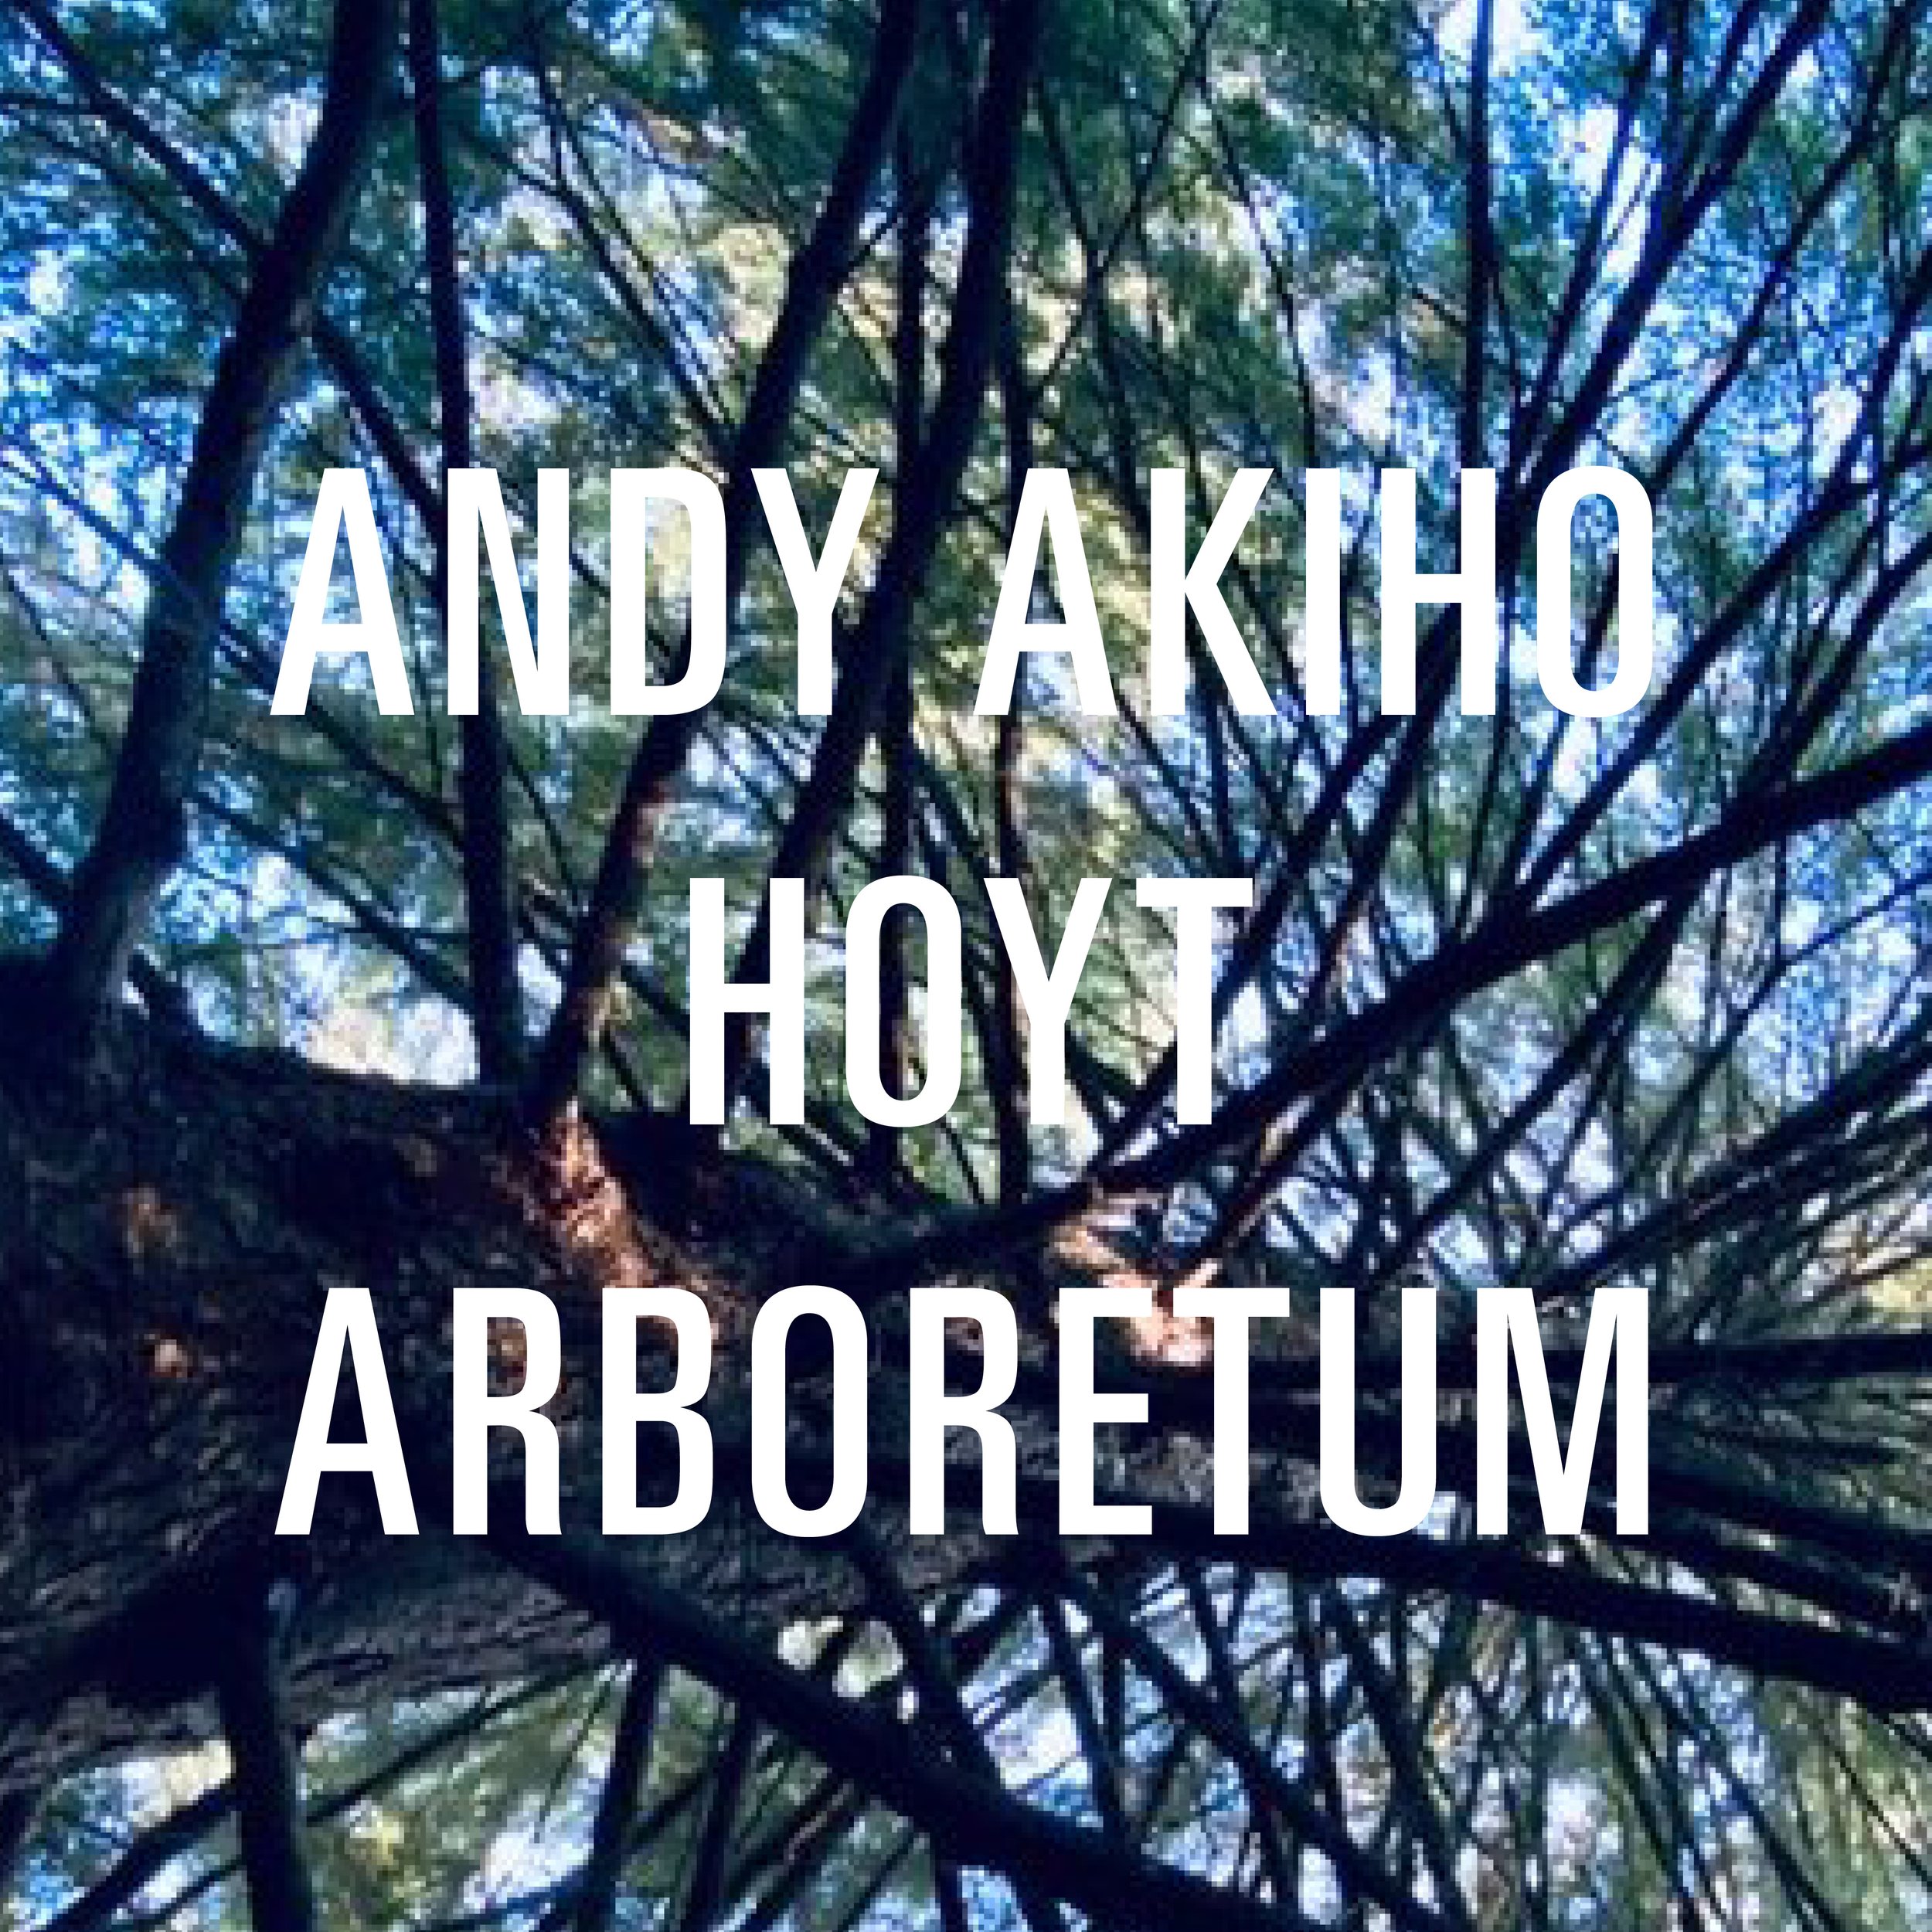 Andy Akiho Hoyt Arboretum